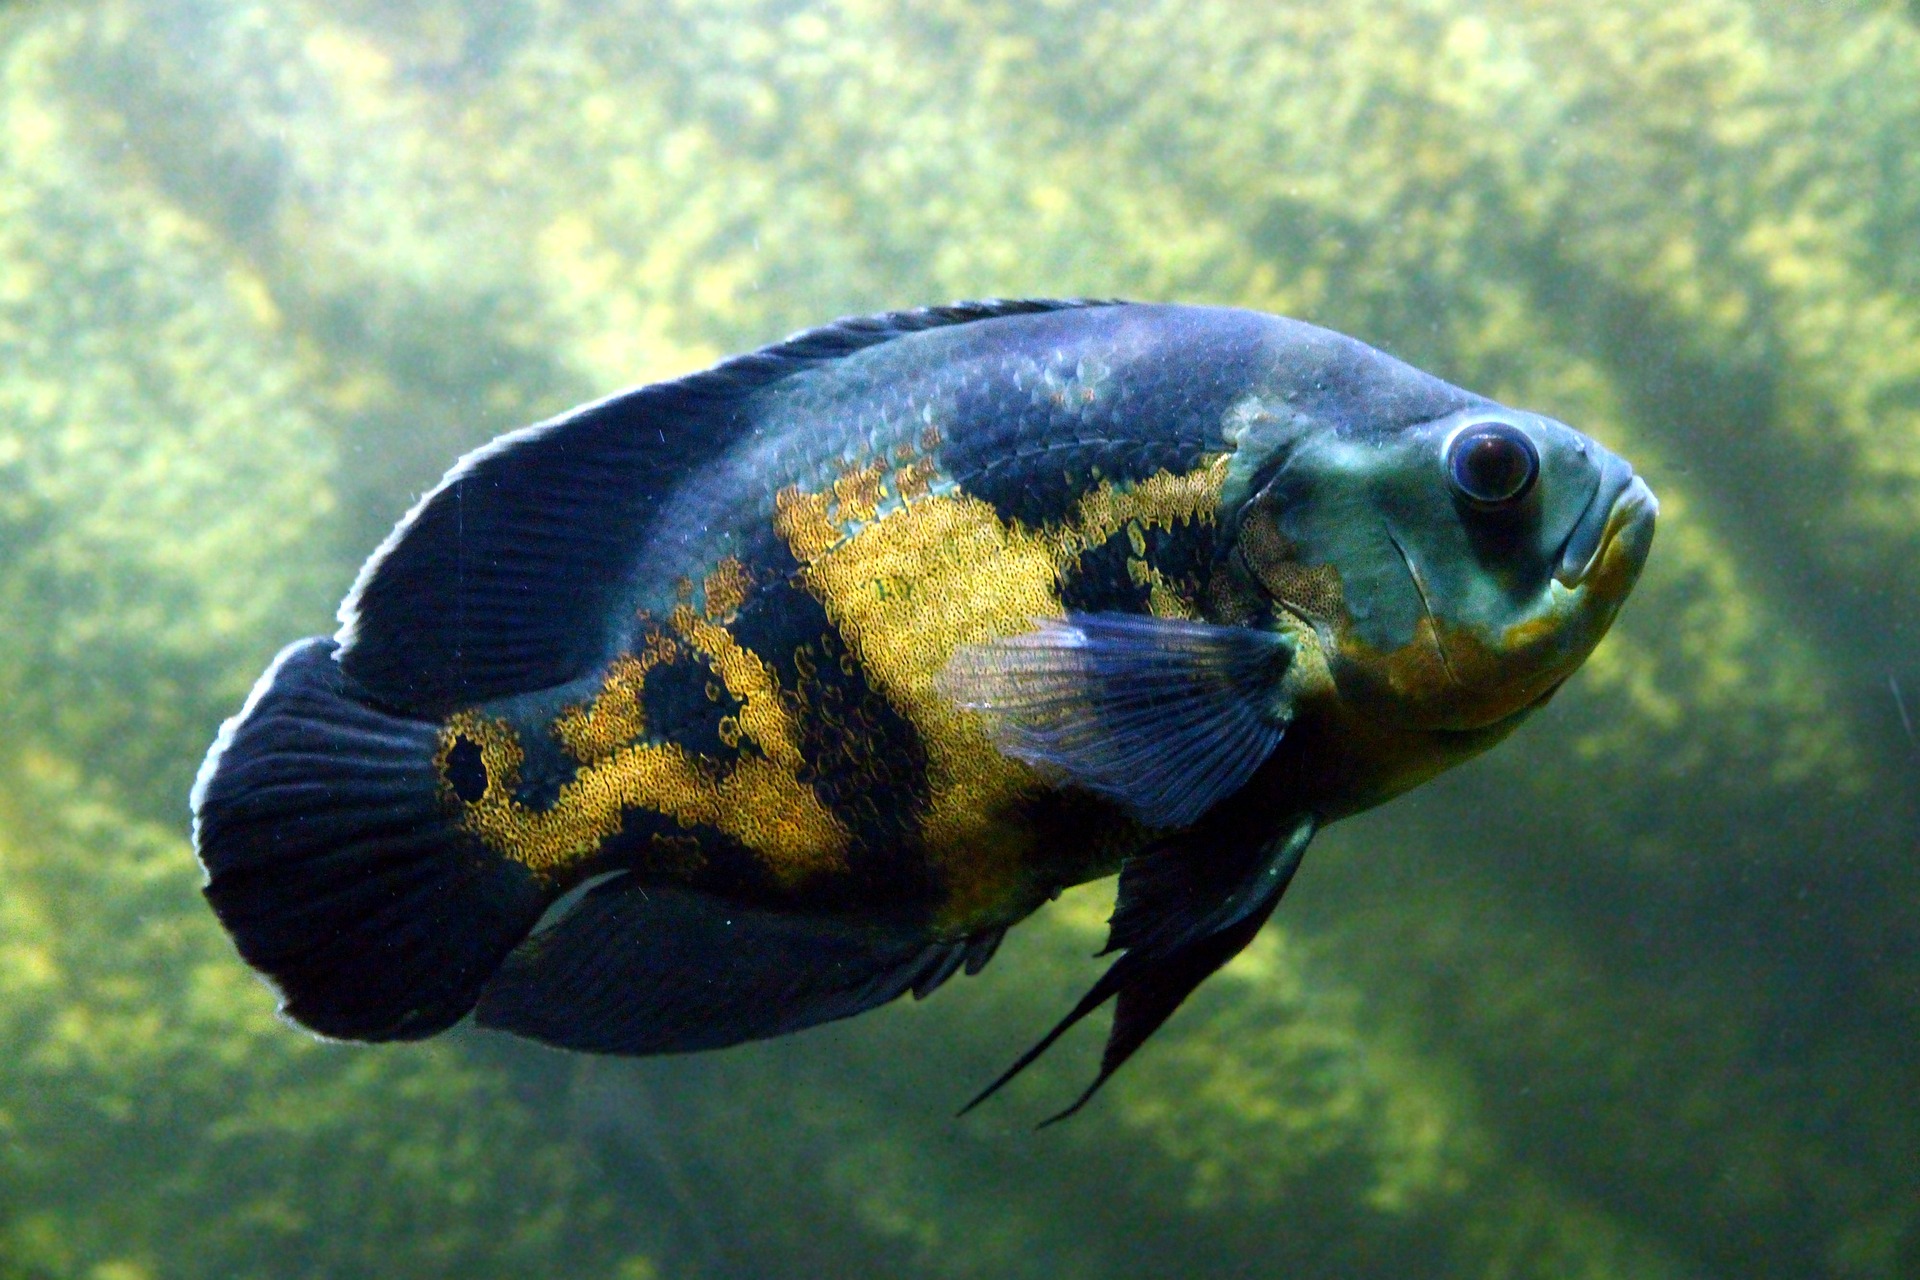 Tiger Oscar cichlid fish in a home aquarium